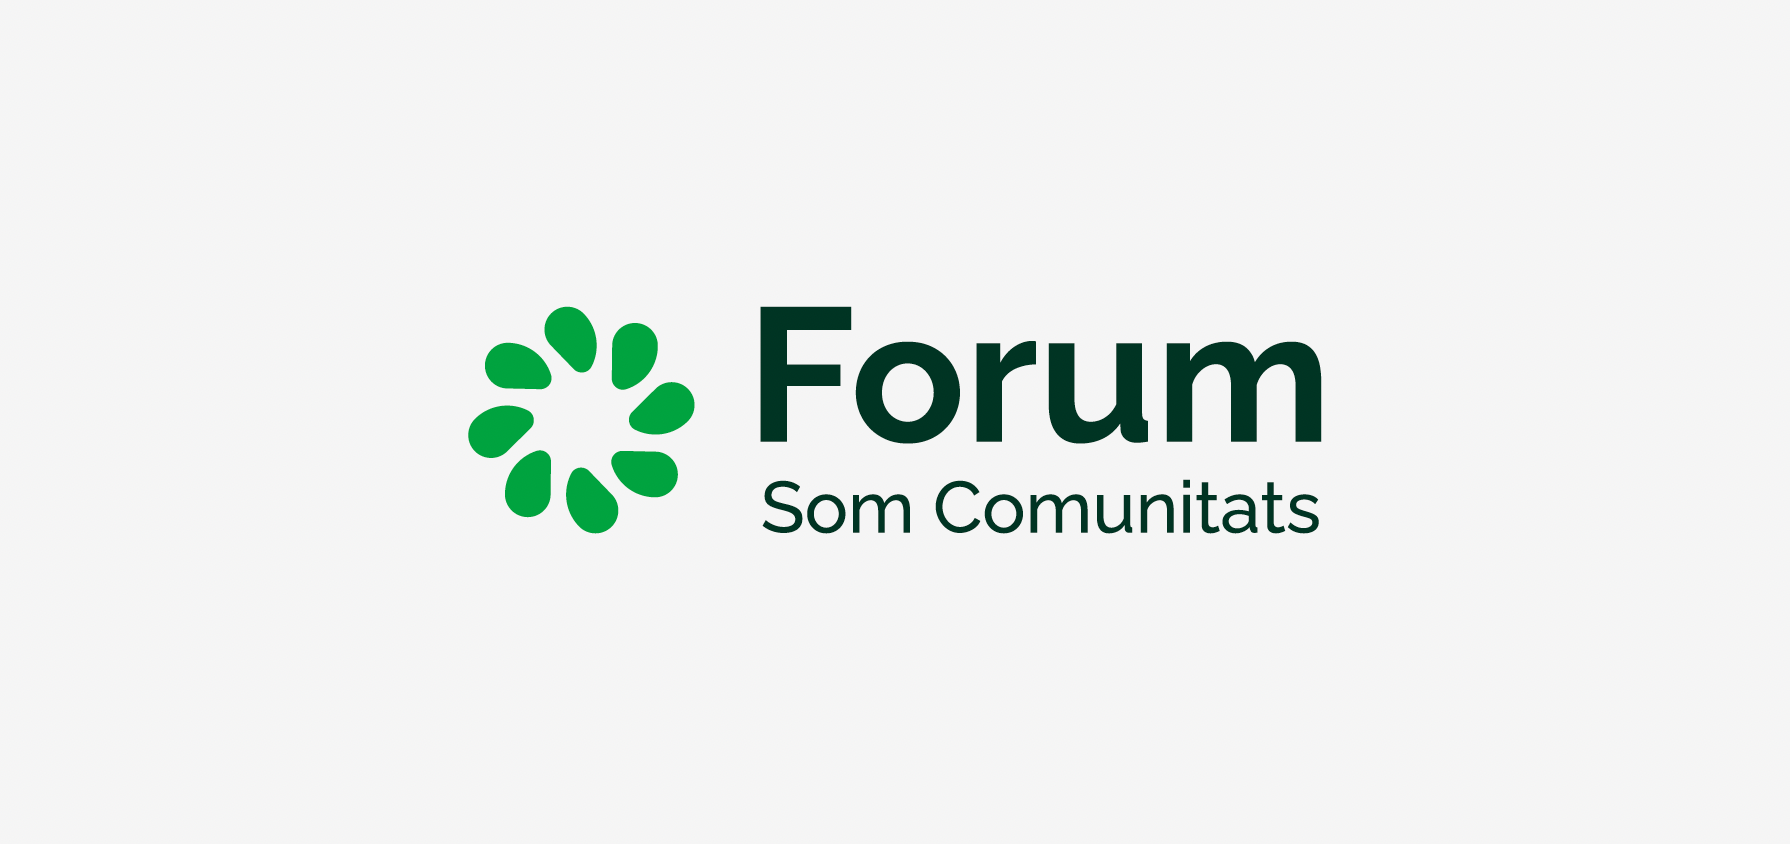 Presentem el Forum per a Comunitats Energètiques